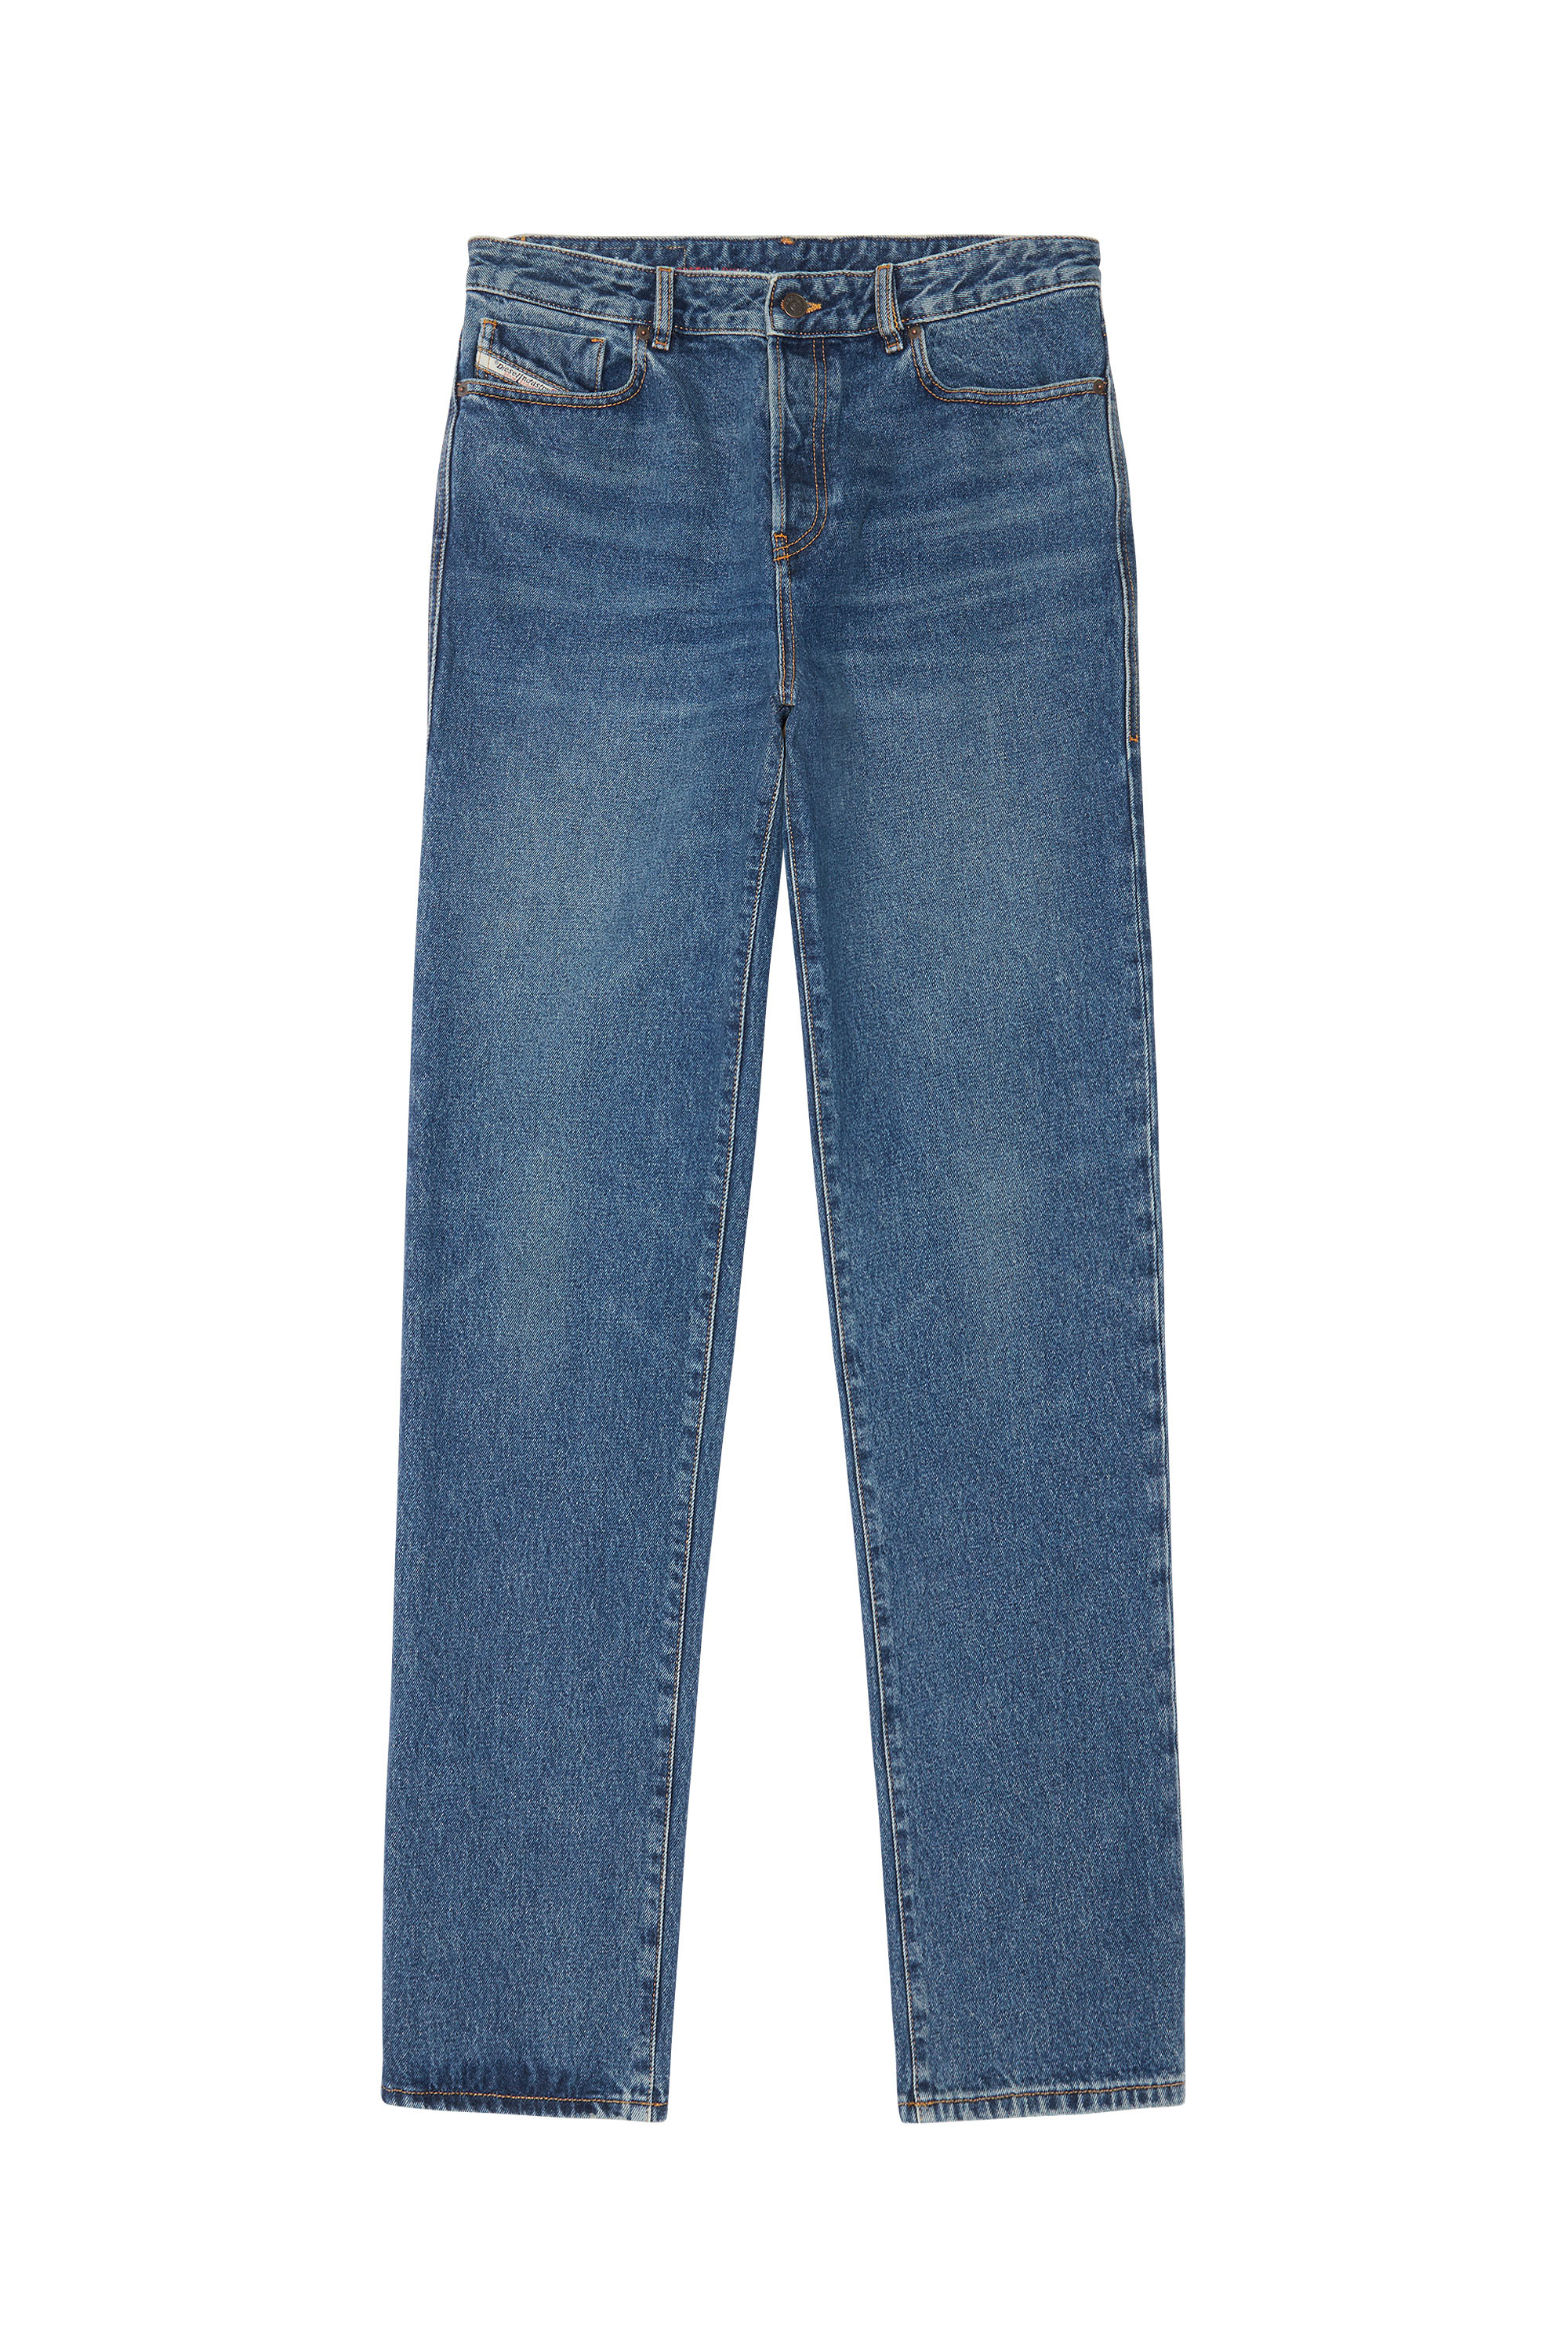 1955 007E5 Straight Jeans, Azul medio - Vaqueros